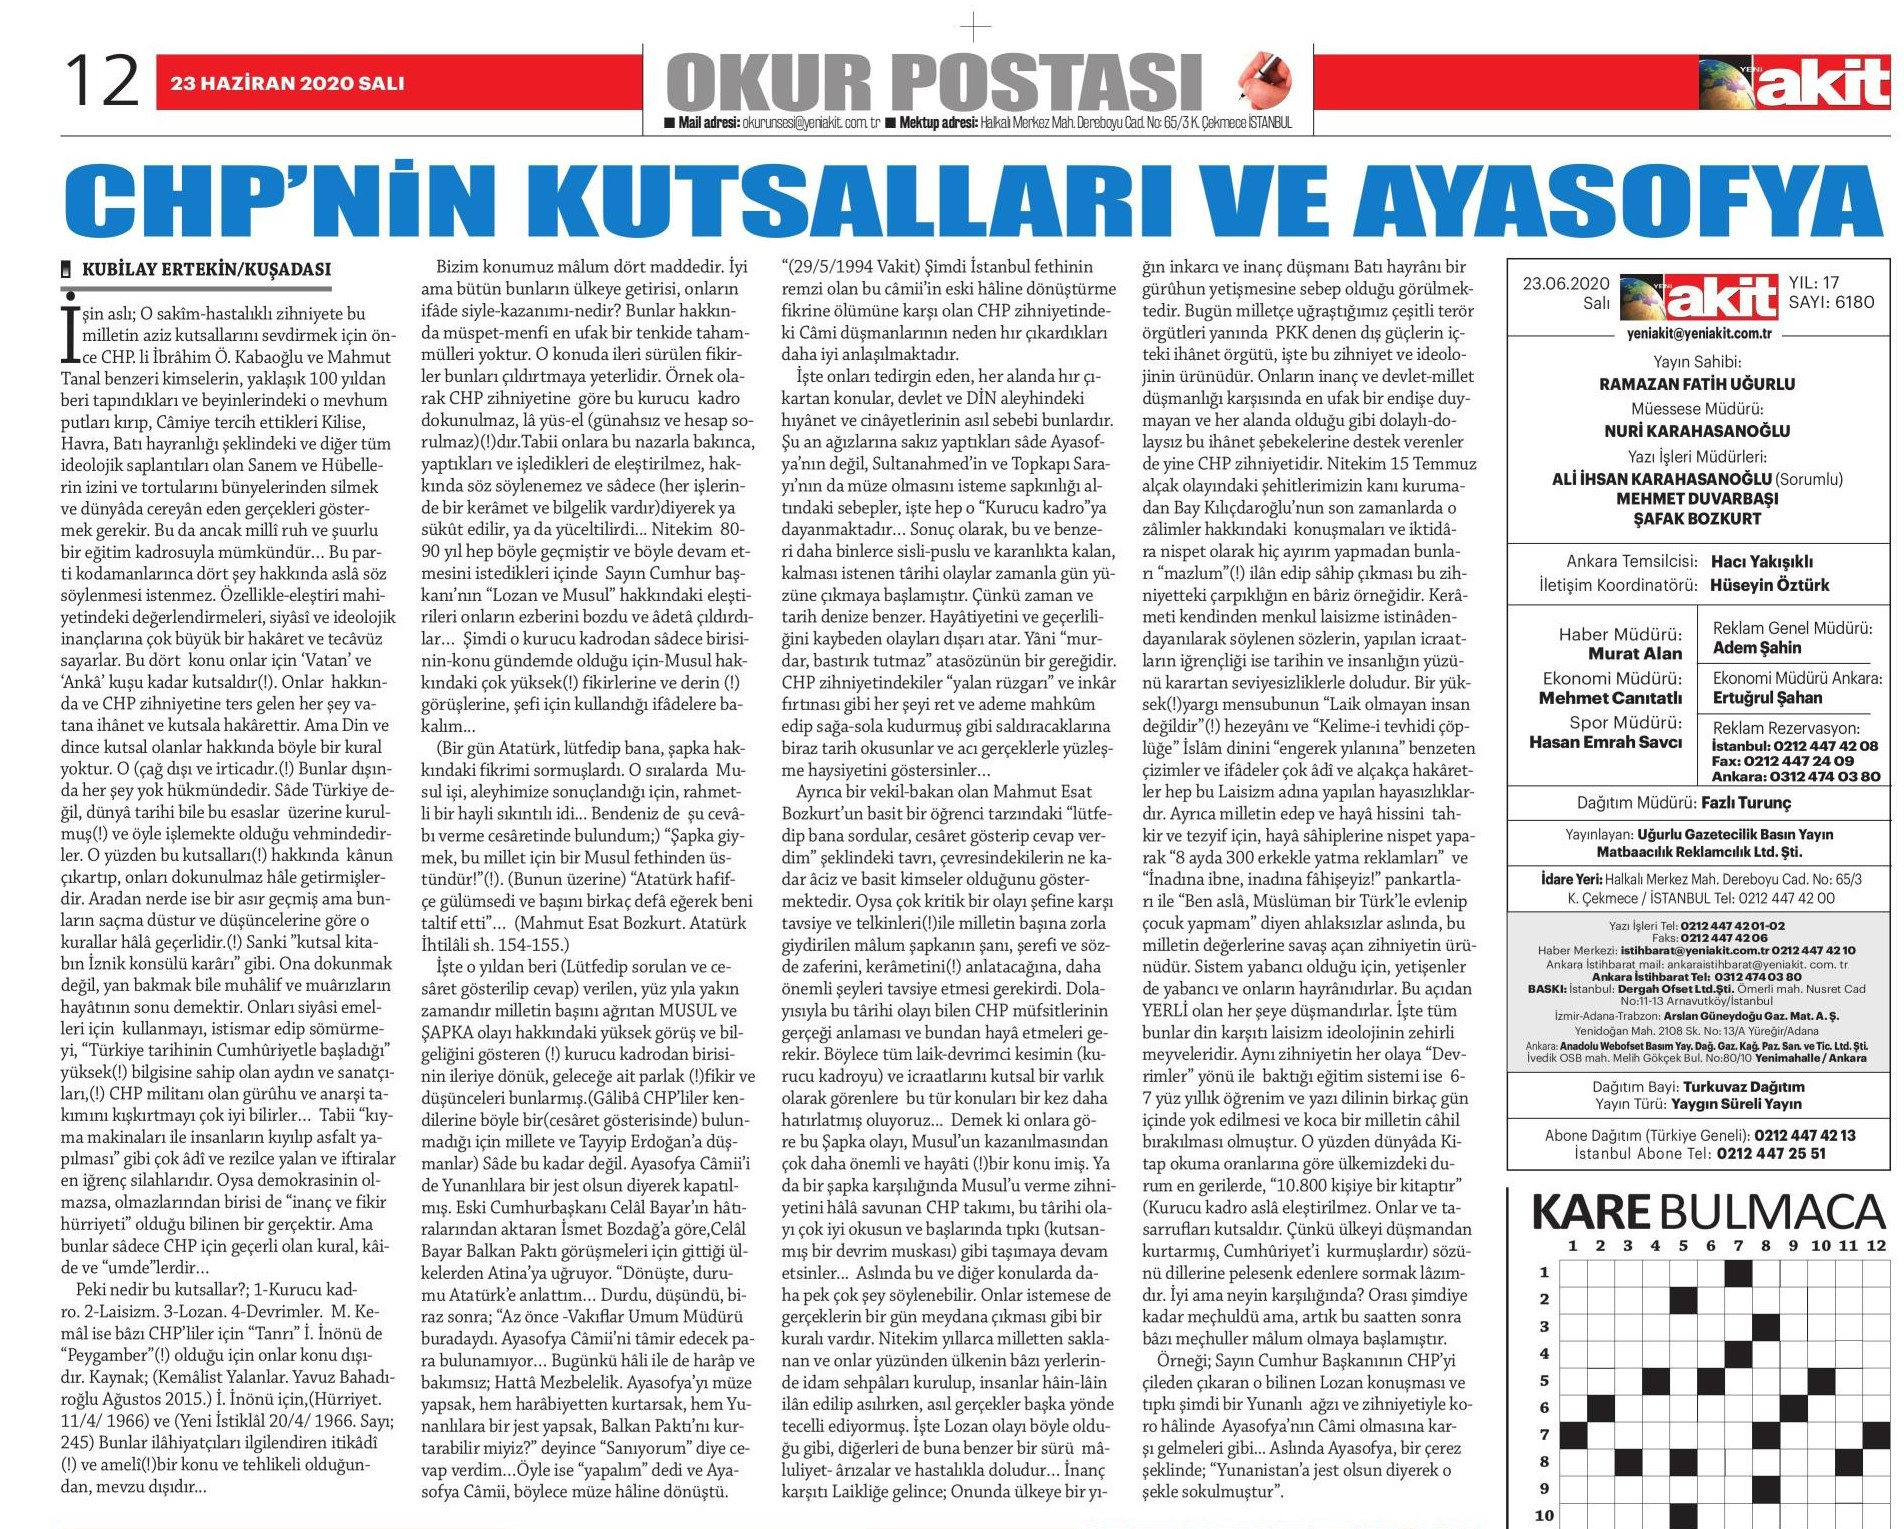 Yandaş Akit 'okur yazısı' kılıfıyla Atatürk'e hakaret etti - Resim : 1